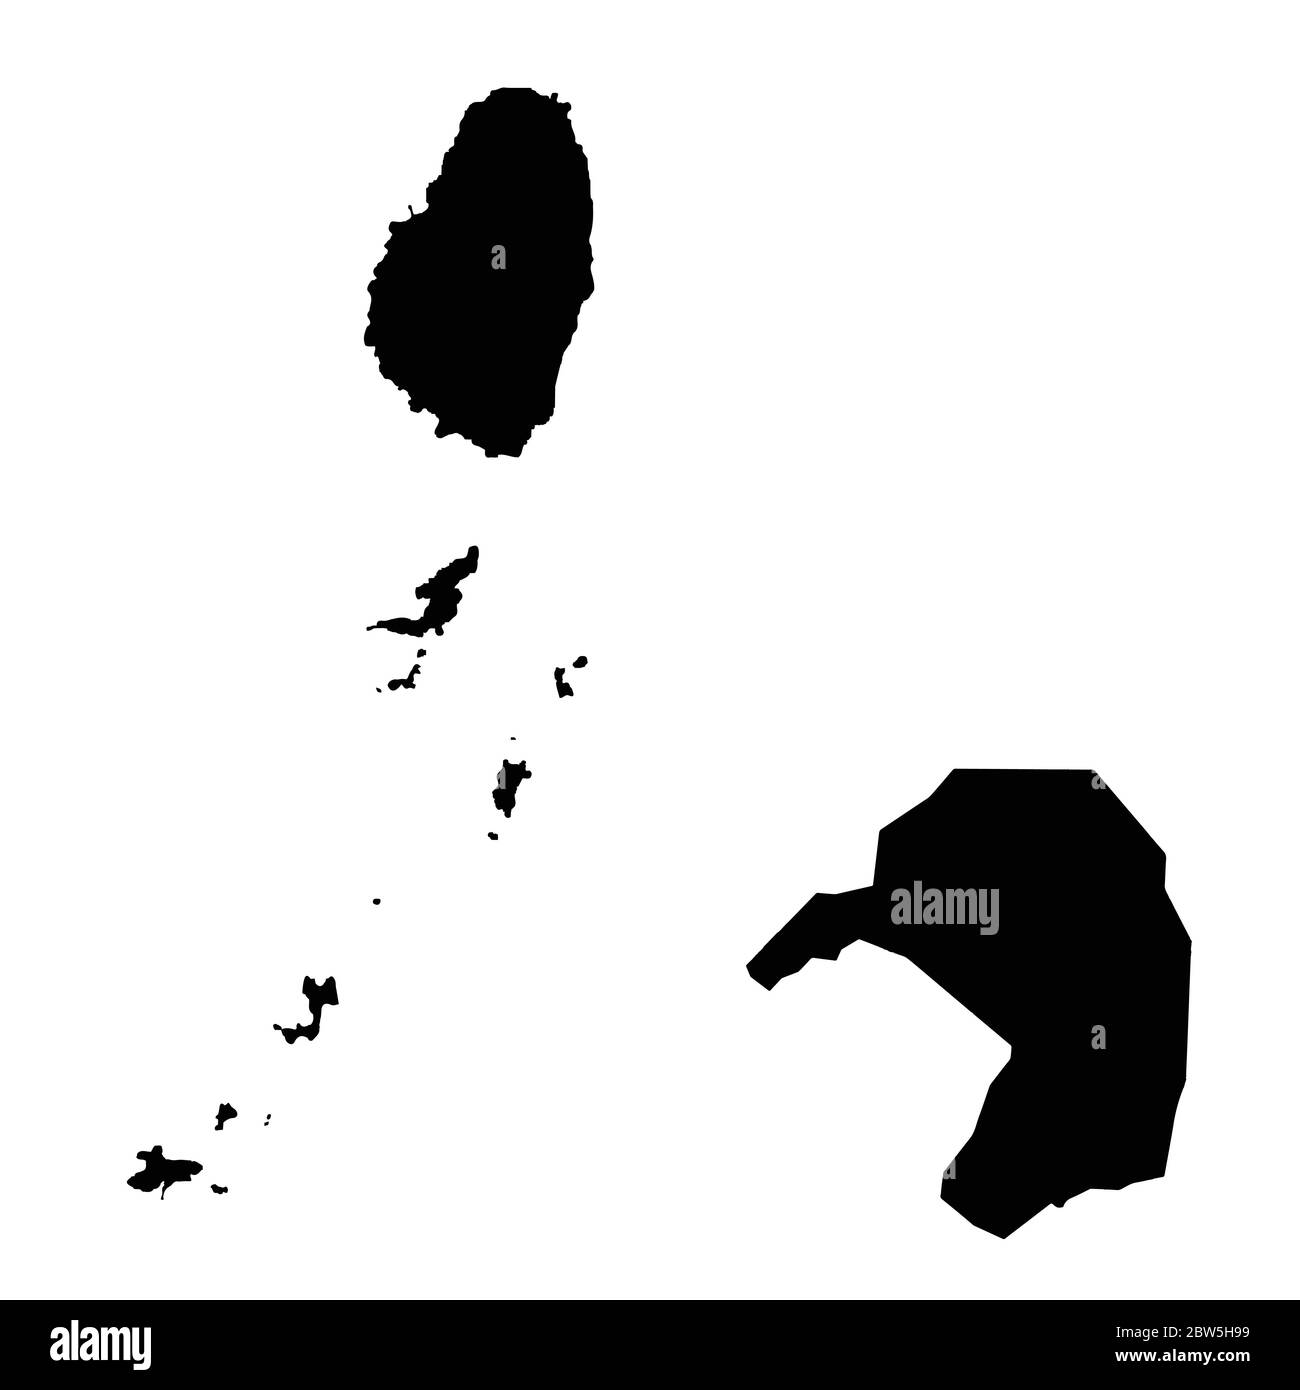 Mappa vettoriale Saint Vincent e Grenadine e Kingstown. Paese e capitale. Illustrazione vettoriale isolata. Nero su sfondo bianco. EPS 10 Illuss Illustrazione Vettoriale